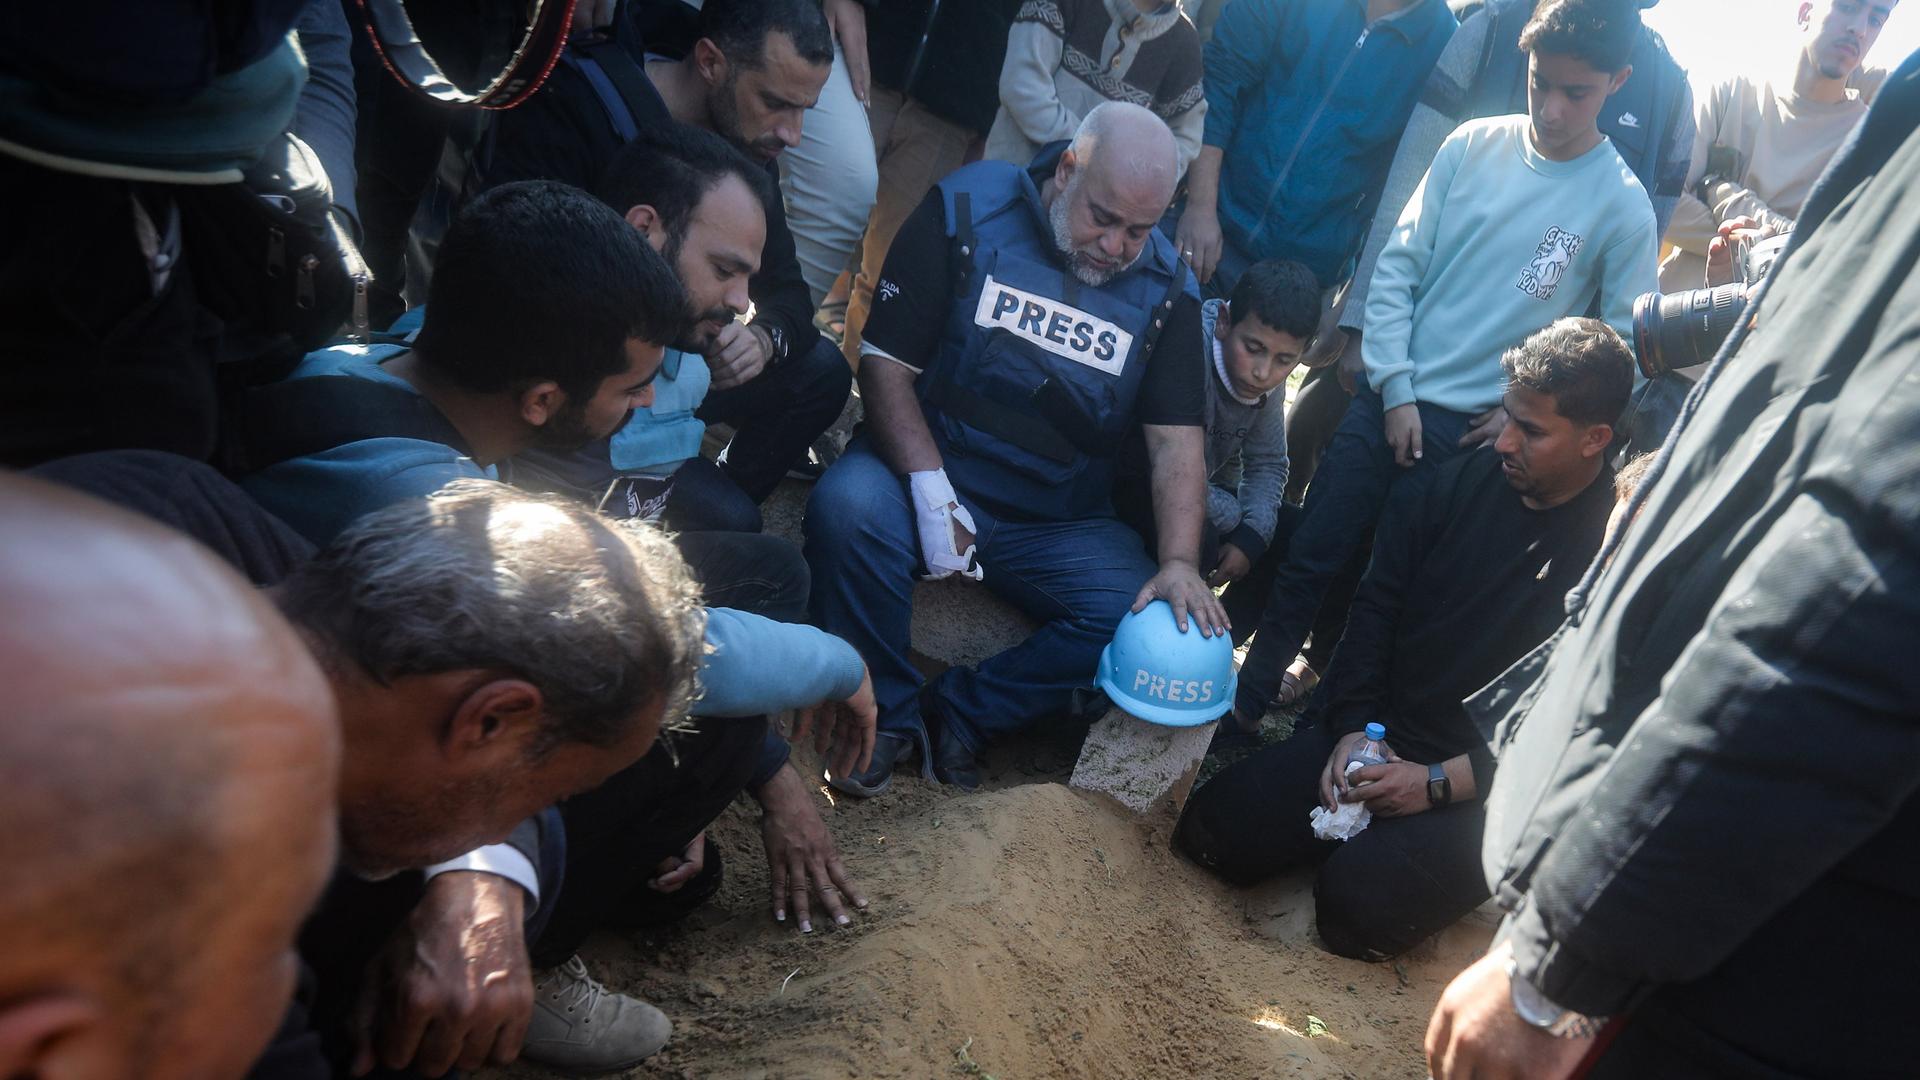 Ein blauer Helm mit der Aufschrift "Press" liegt auf dem mutmaßlichen Grab des palästinensischen Journalisten Hamza Dahdouh. Daneben knien und sitzen Jungen und Männer, einer davon trägt eine Presseweste.